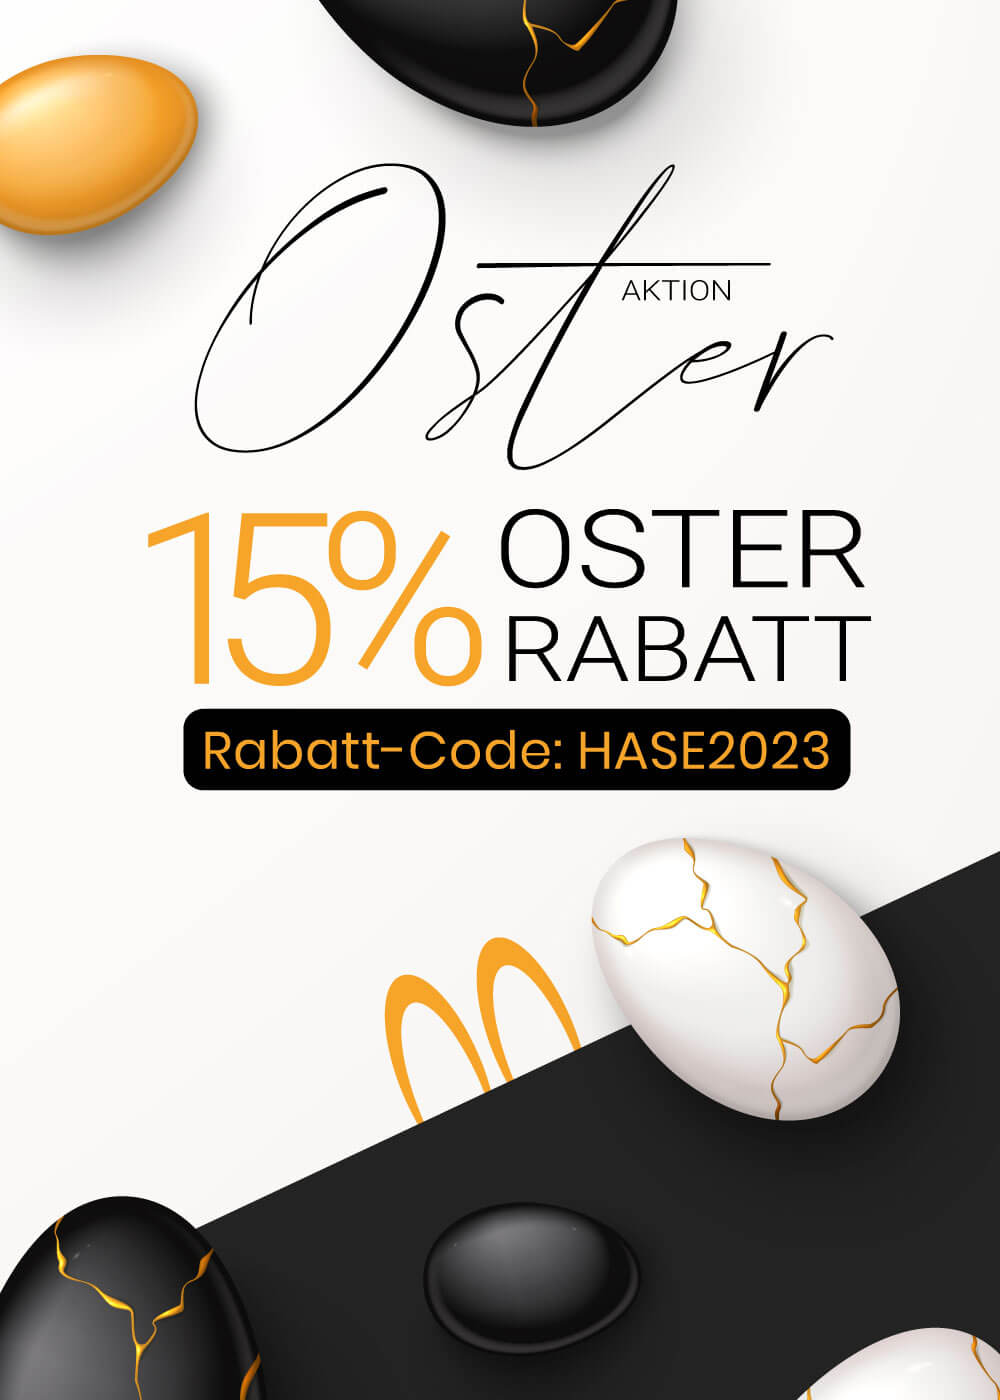 Osterfest Aktion mit Rabatt von 15% auf alle Artikel. Dekorativ mit Ostereiern in einem Schwarz Weiß Design